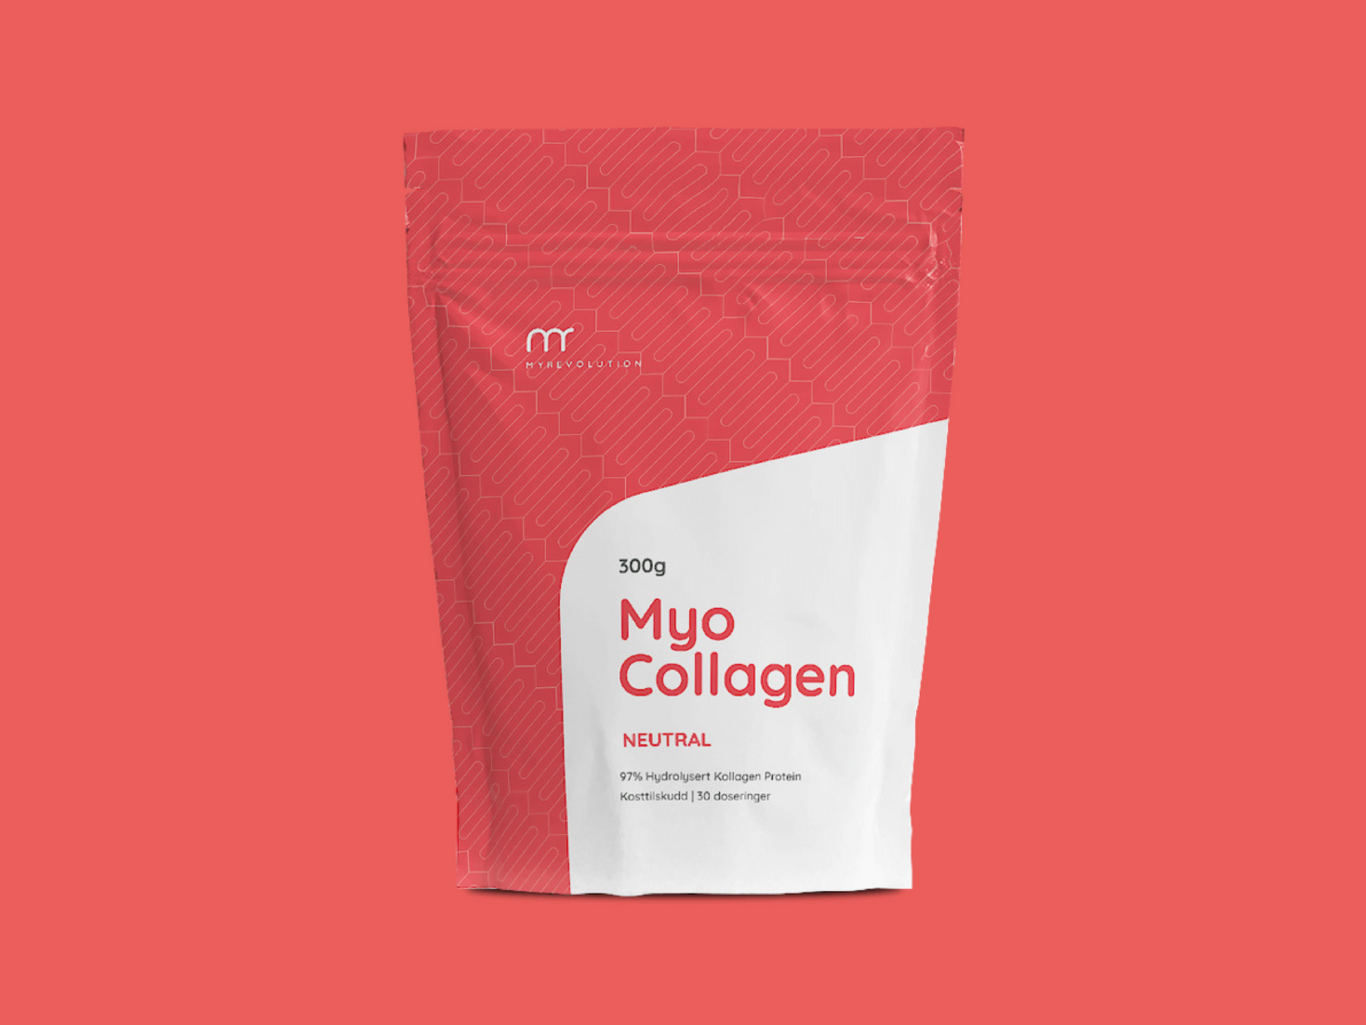 Myo Collagen Packaging